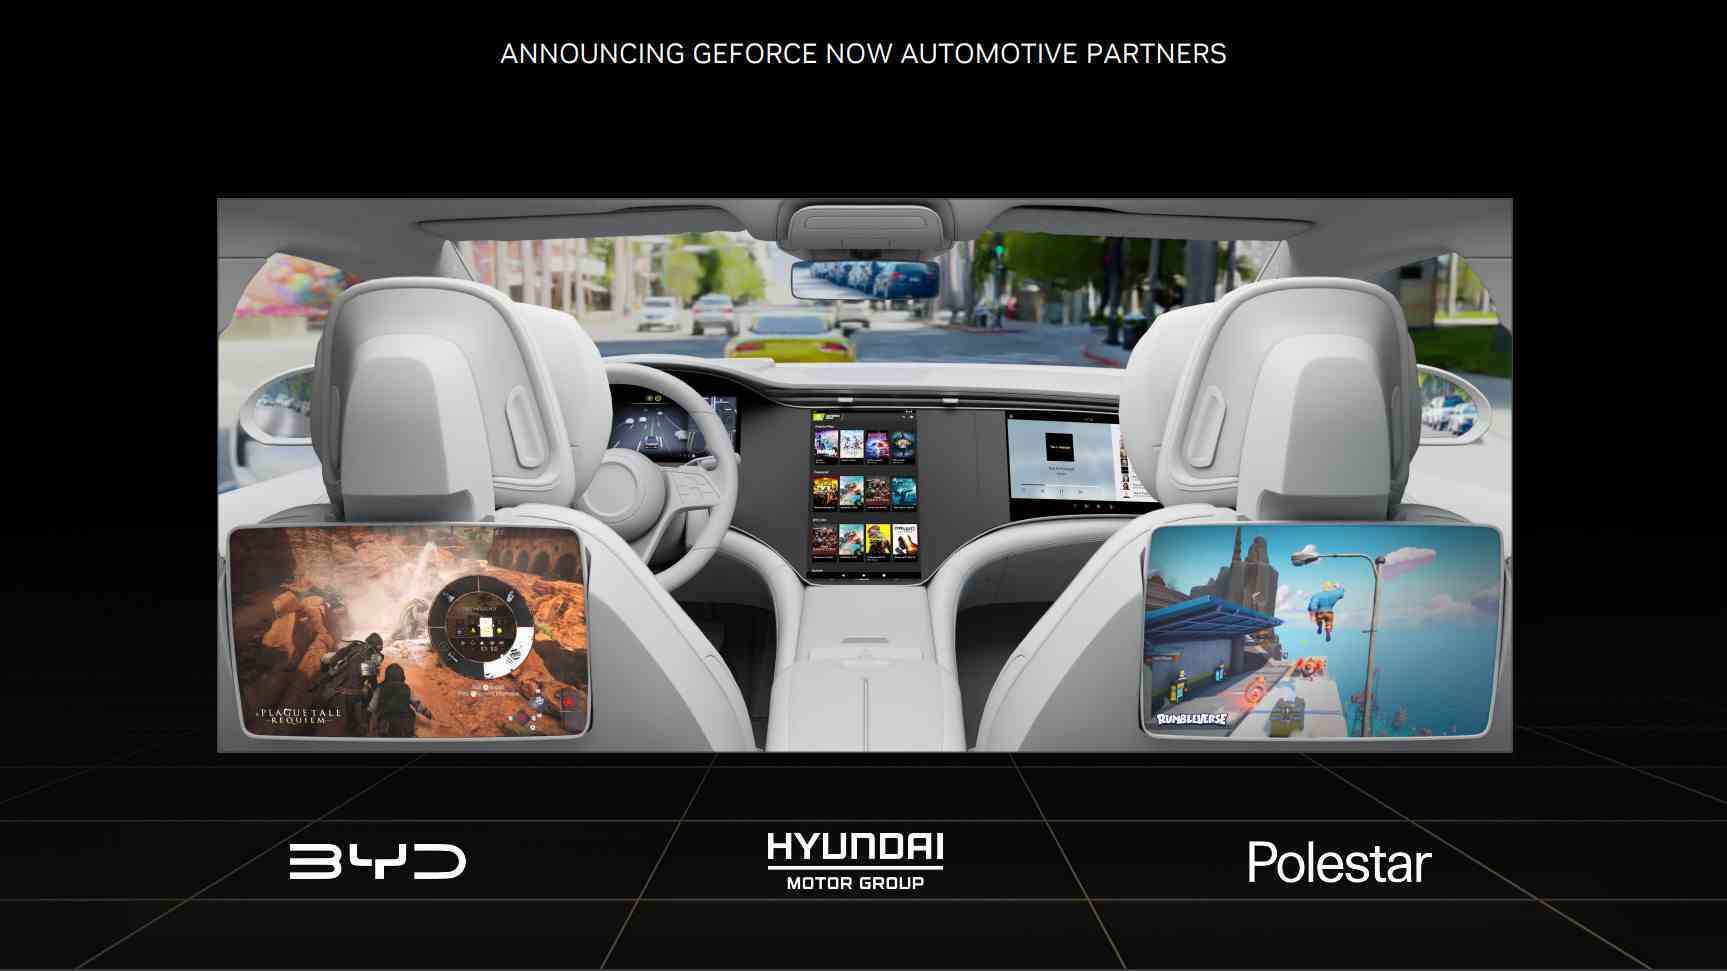 NVIDIA GeForce Now otomotiv iş ortakları